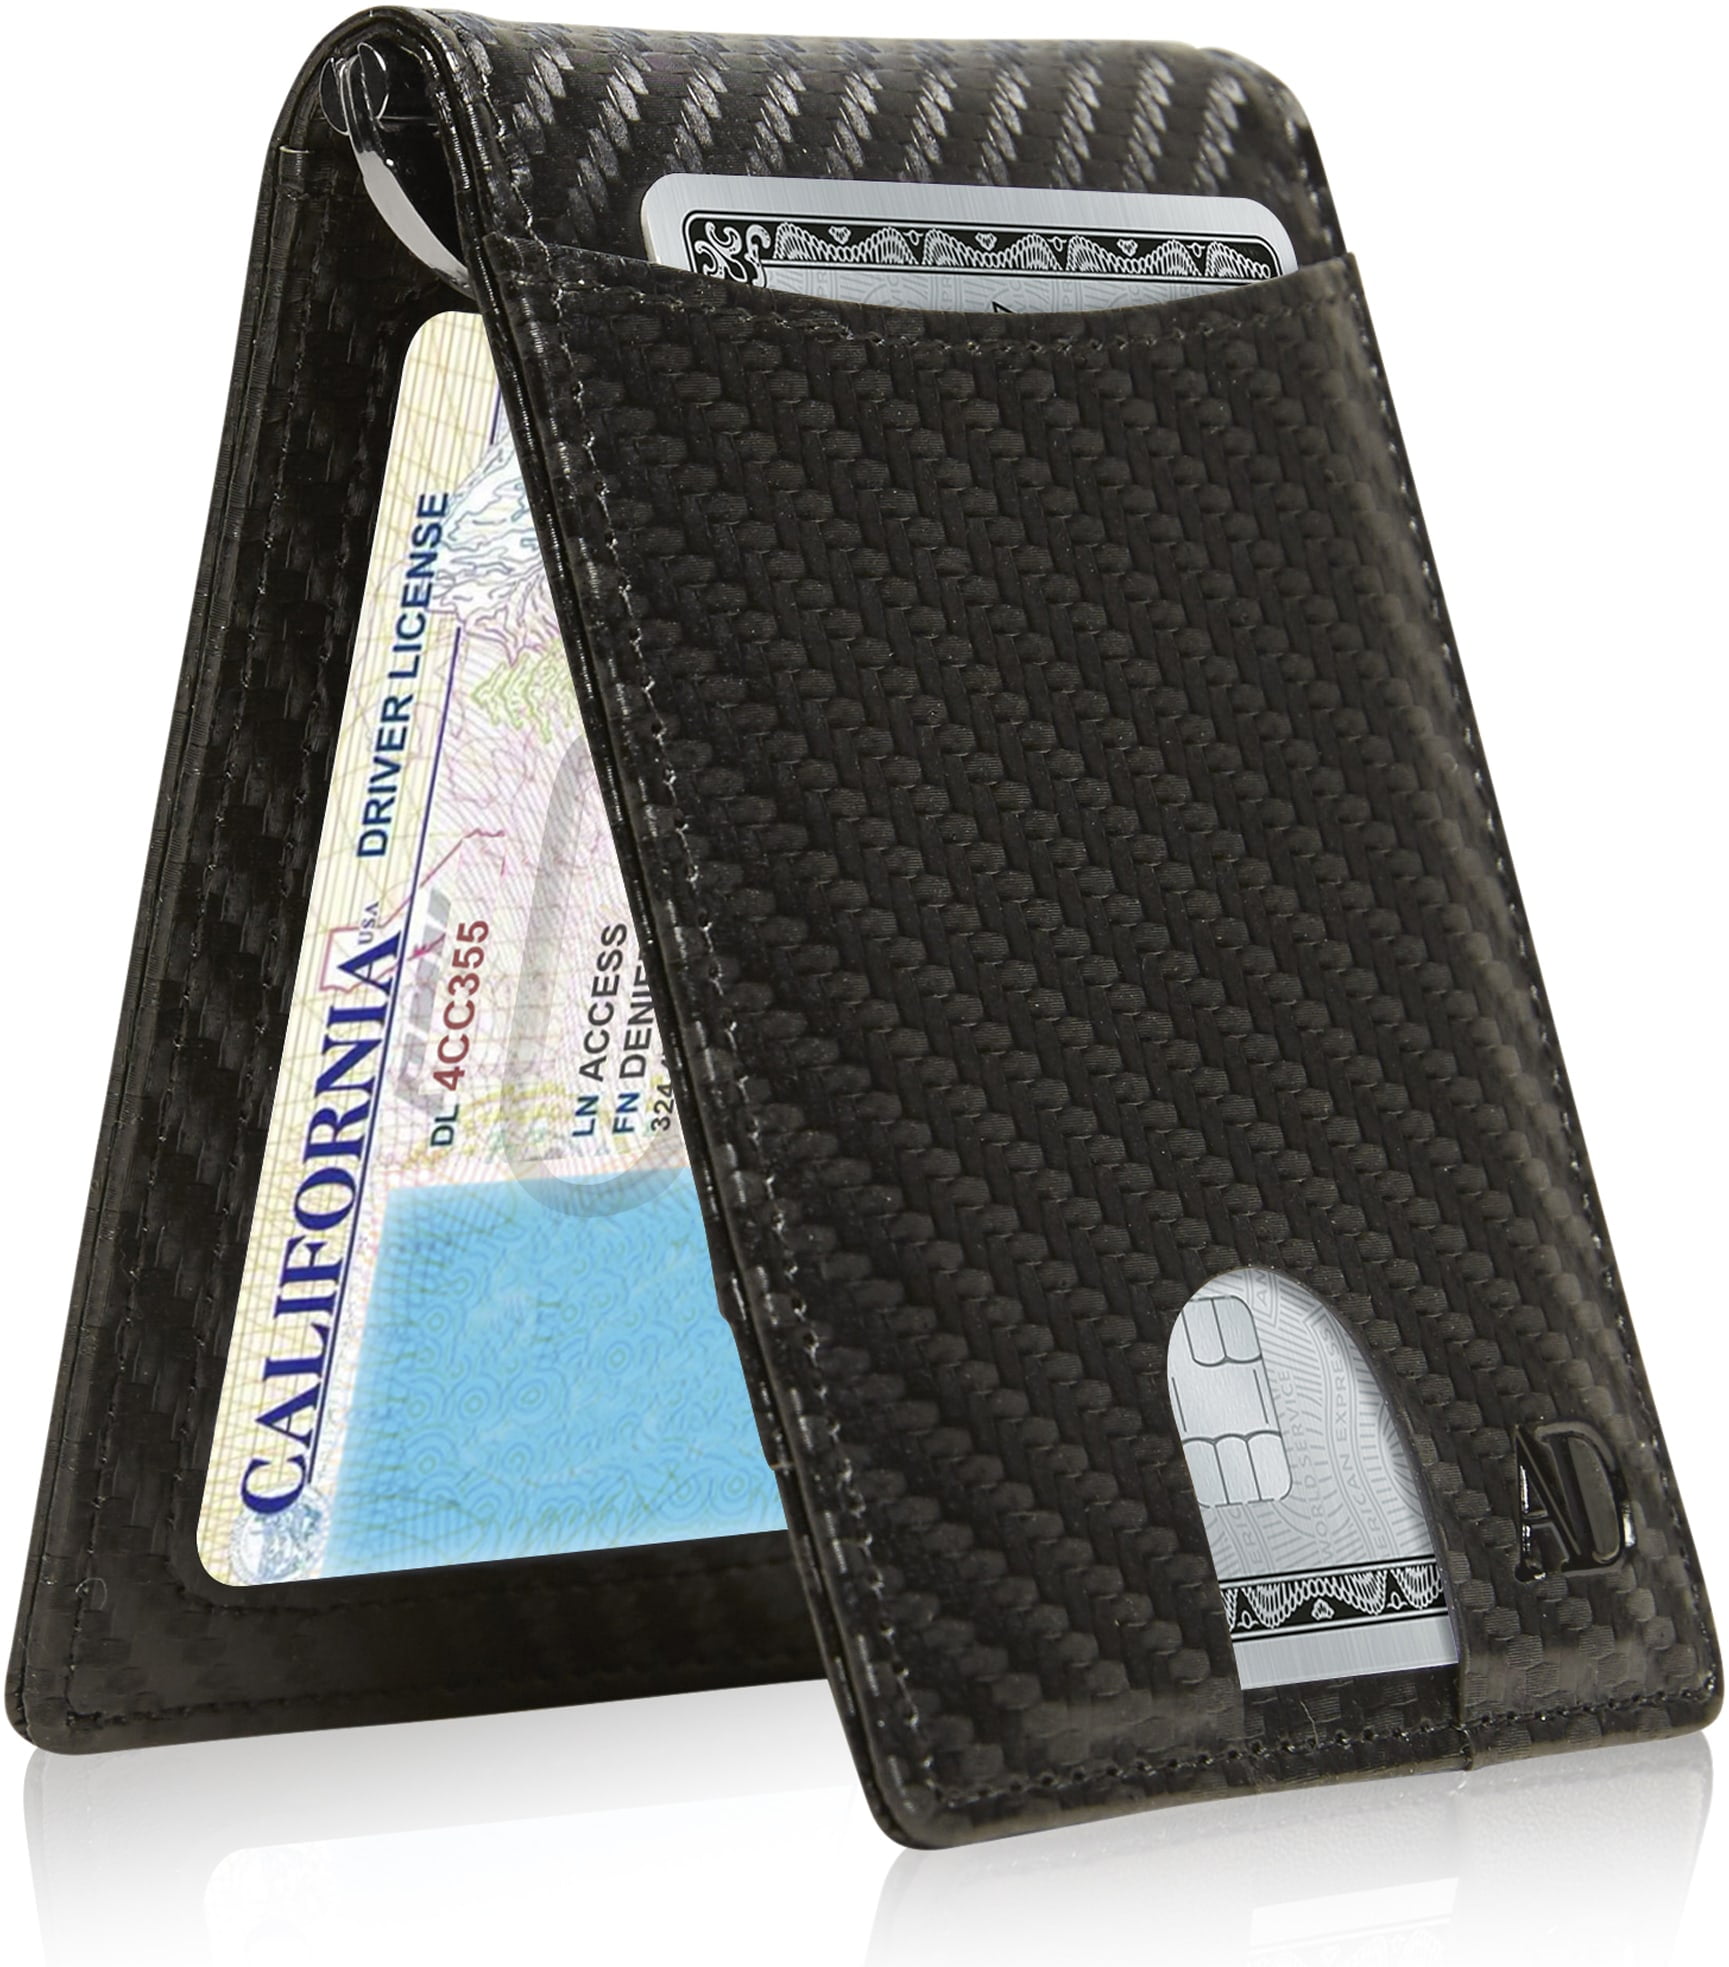 Mens Slim Lr M Clip W B RFID F P C Card H US $1.95 rda-travel.co.uk